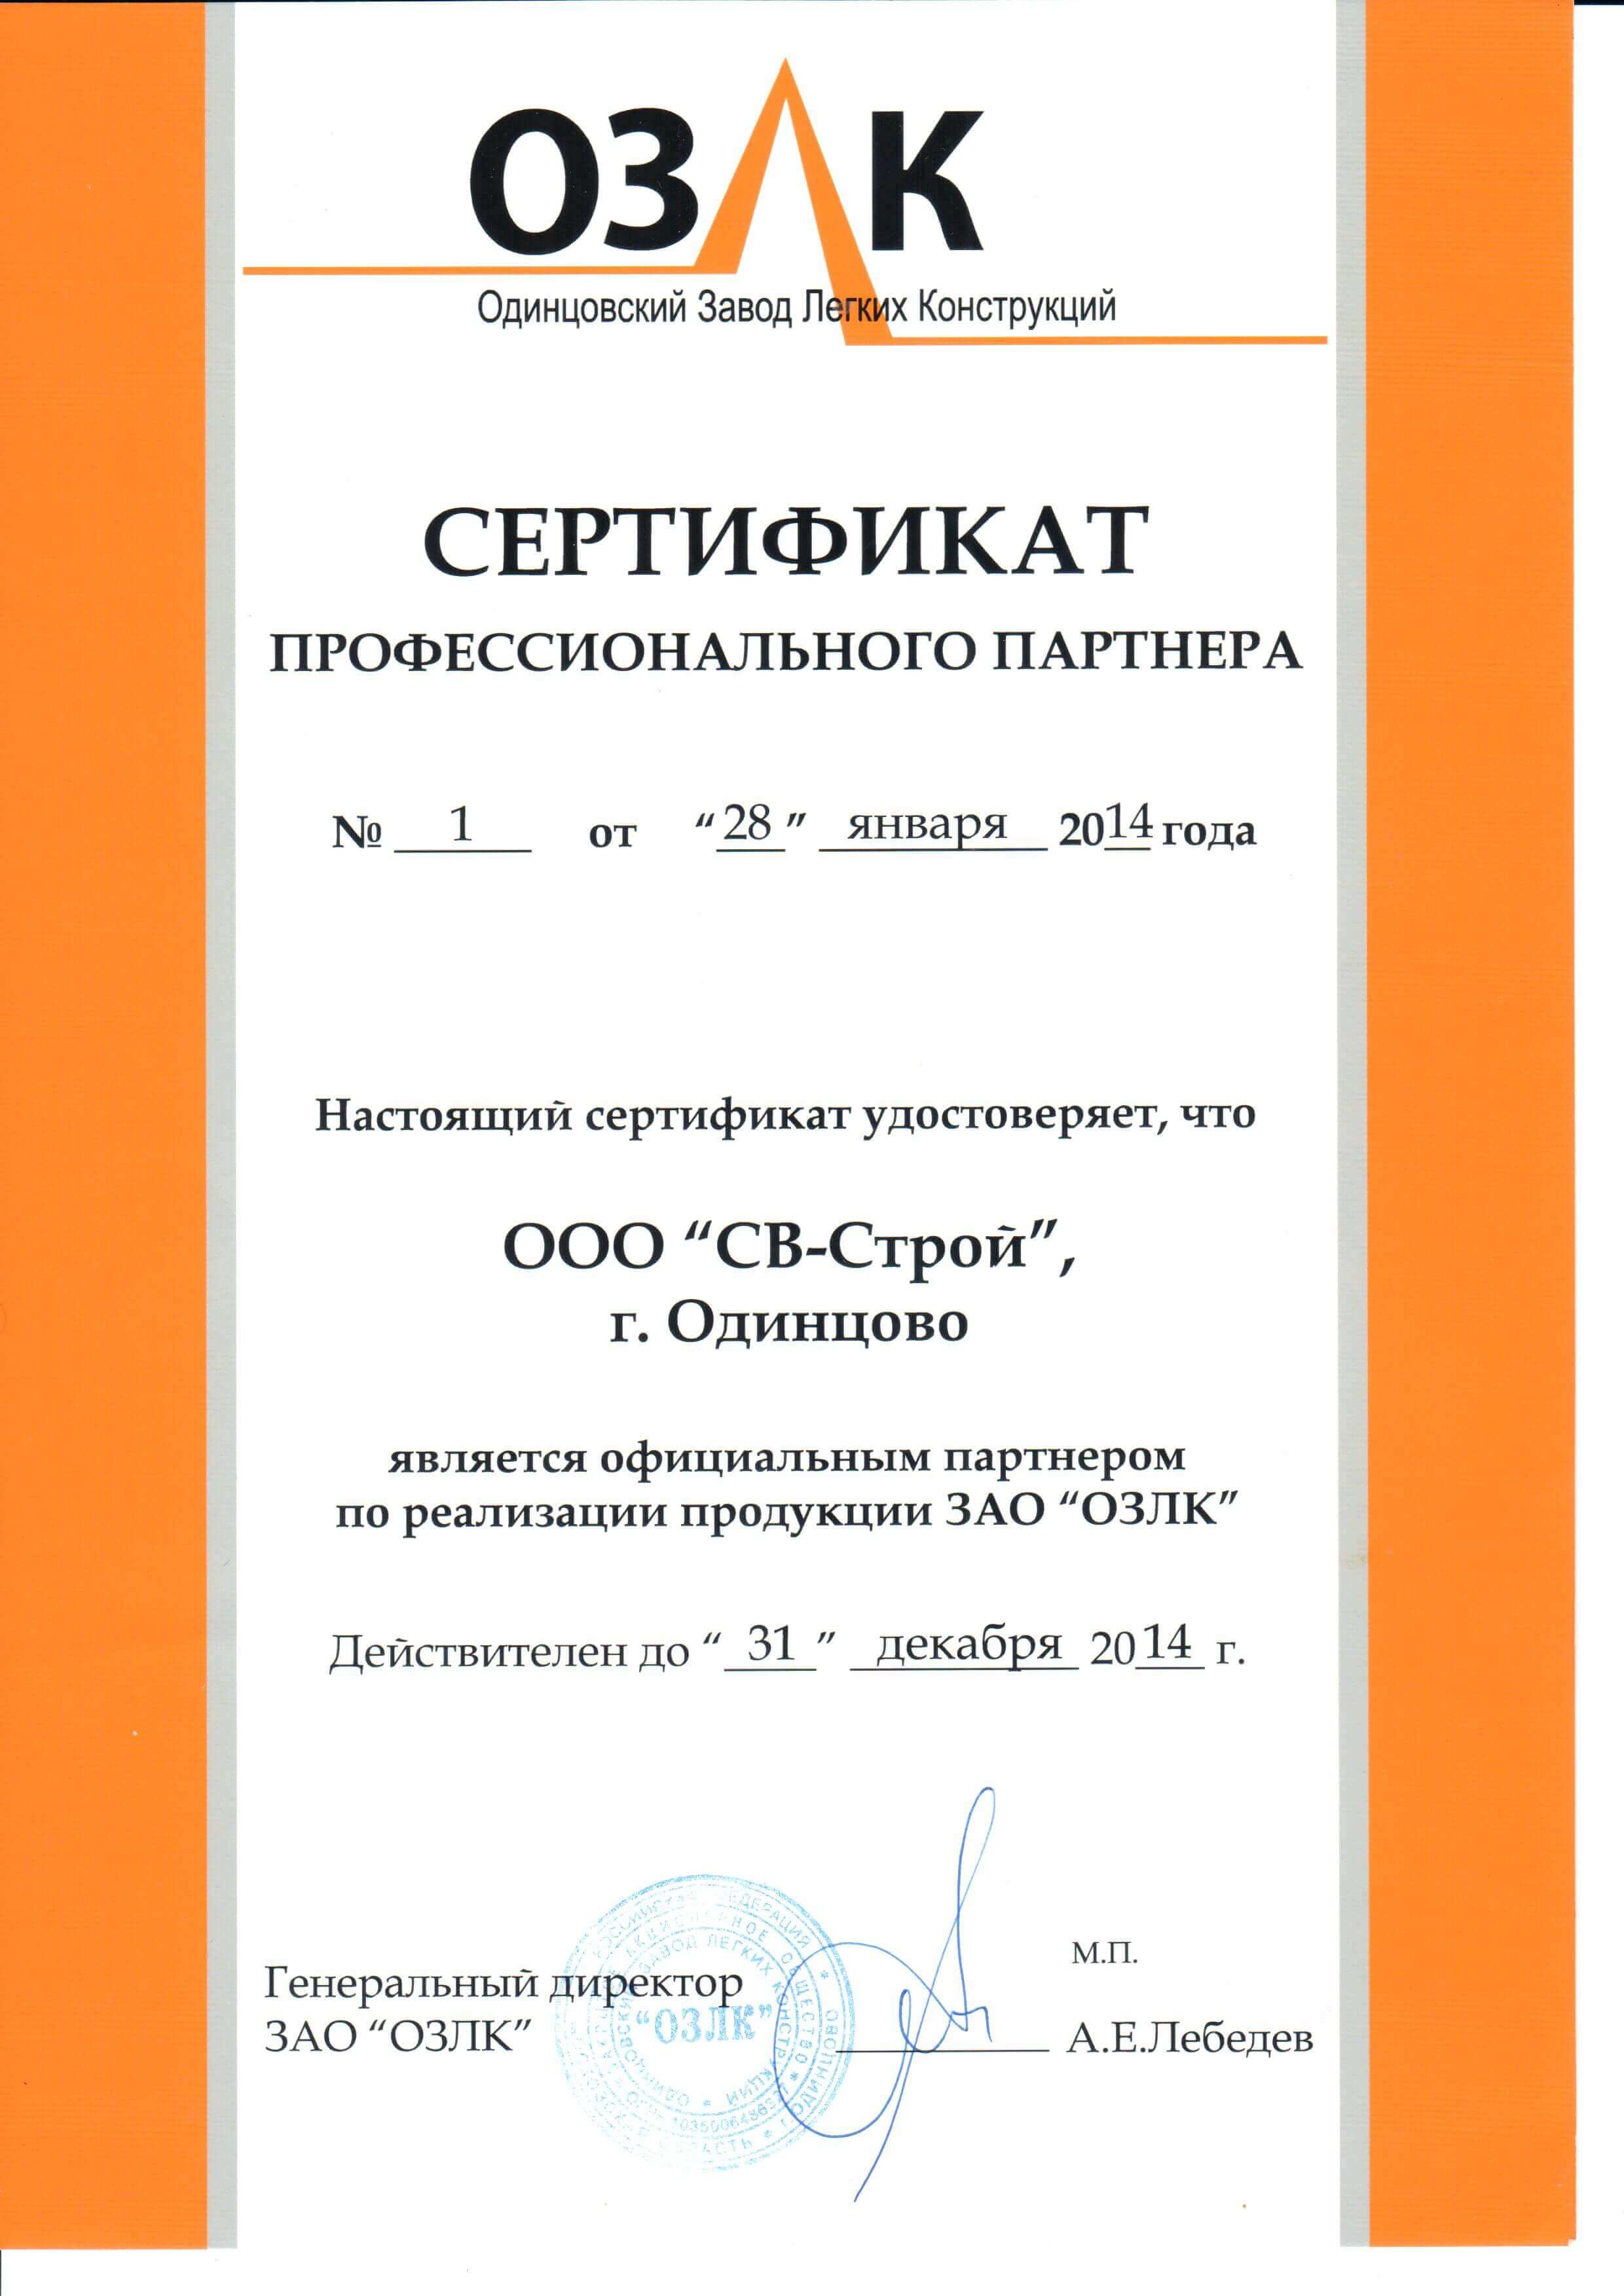 Сертификат партнера ОЗЛК 2014 г.